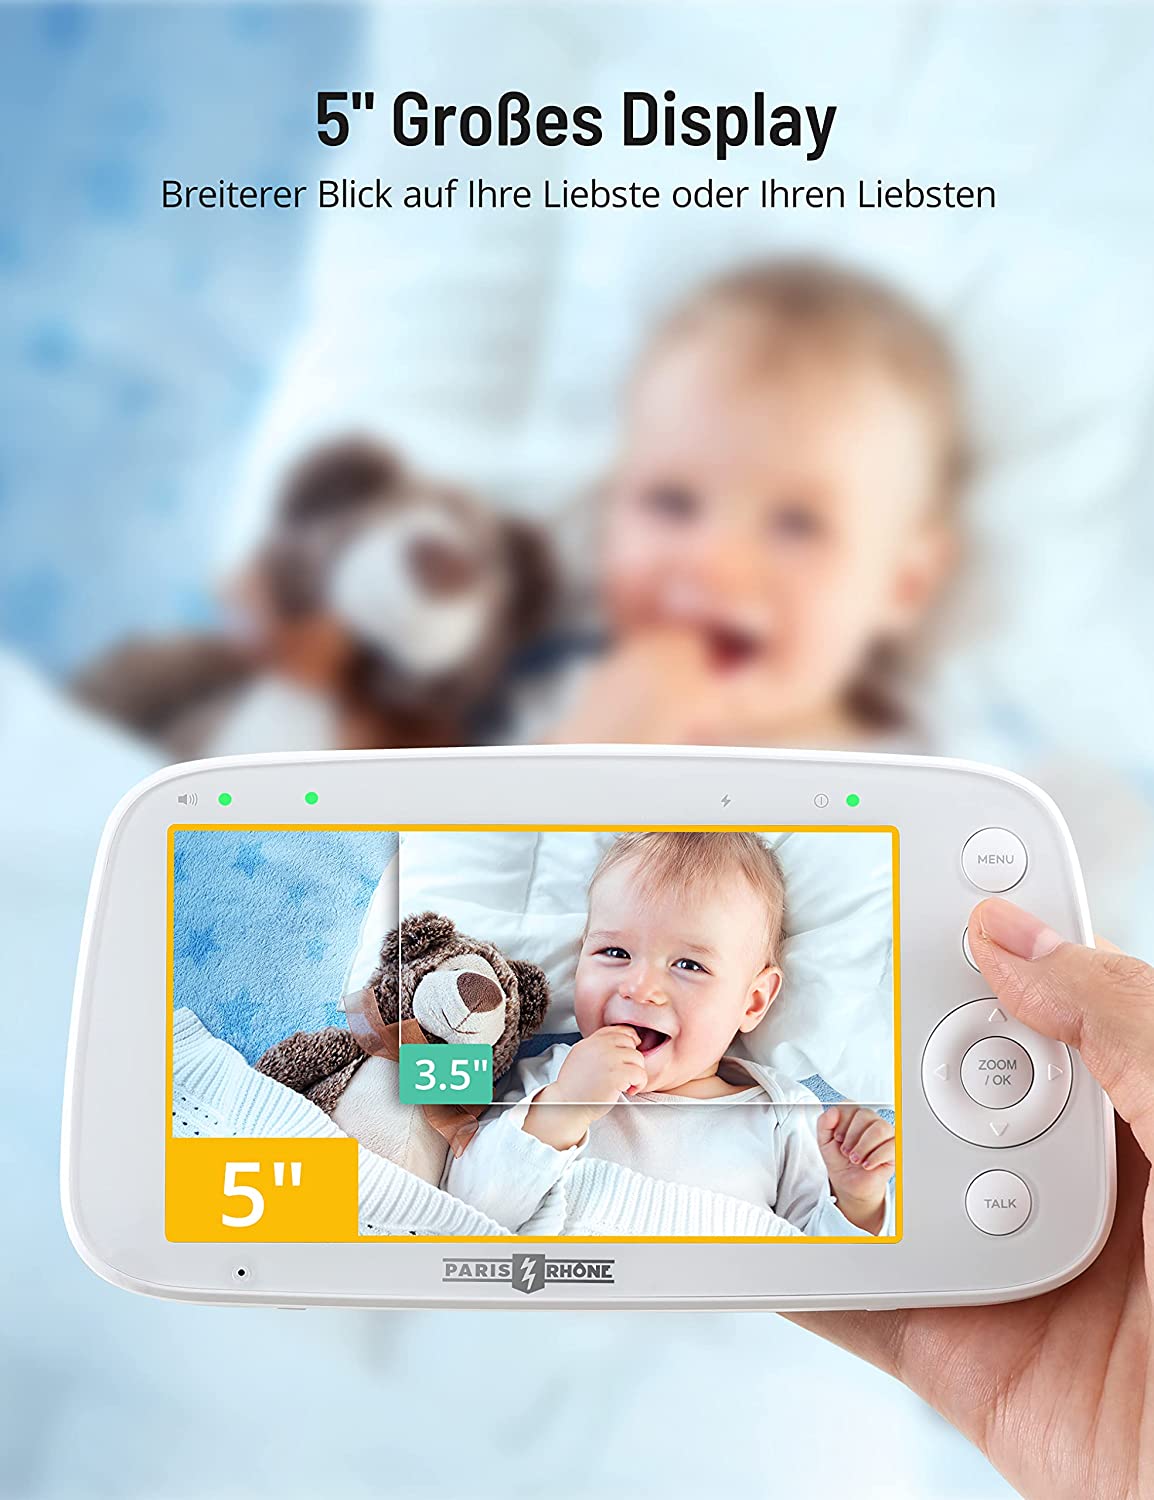 PARIS RHÔNE IH003 Babyphone mit Kamera 720P, Video Baby Monitor mit 5 Zoll großes Display, Bewegungs- und Geräuscherkennung